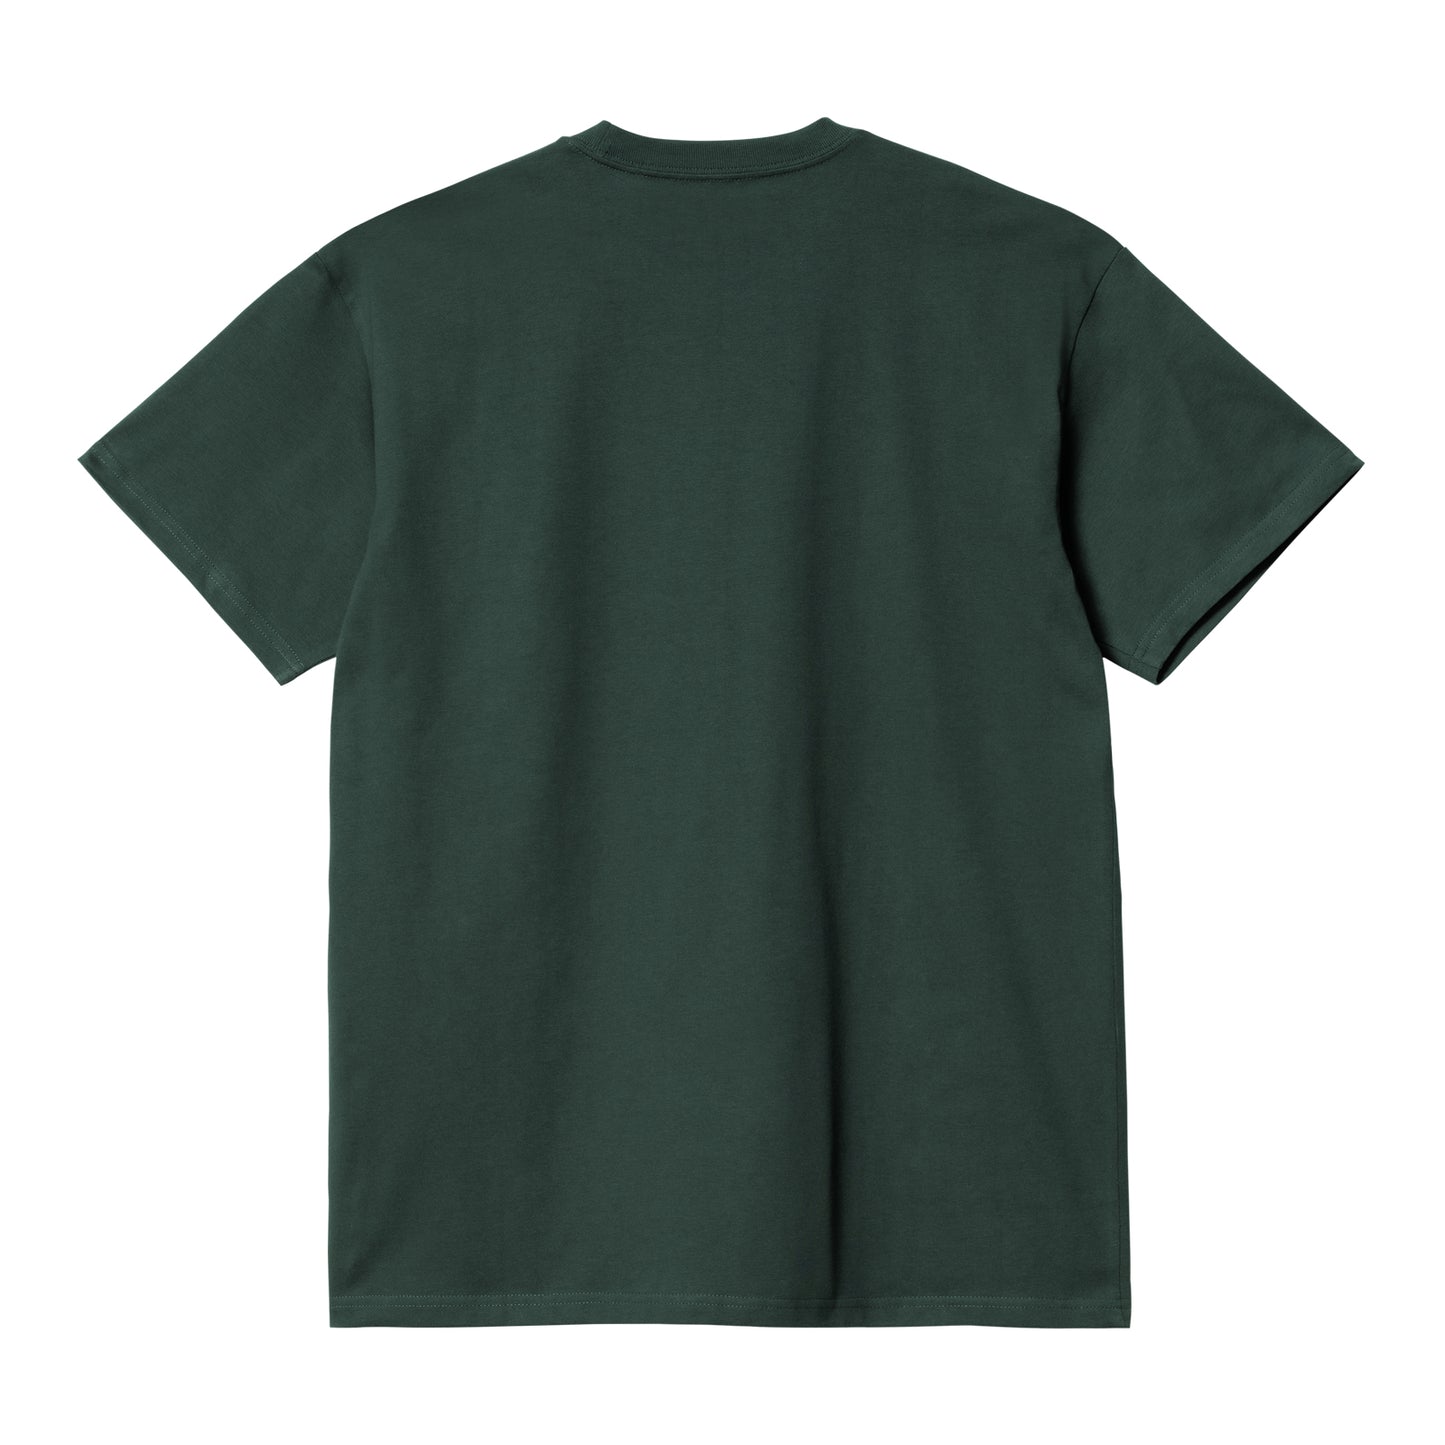 Carhartt WIP Chase T-Shirt Juniper/Gold